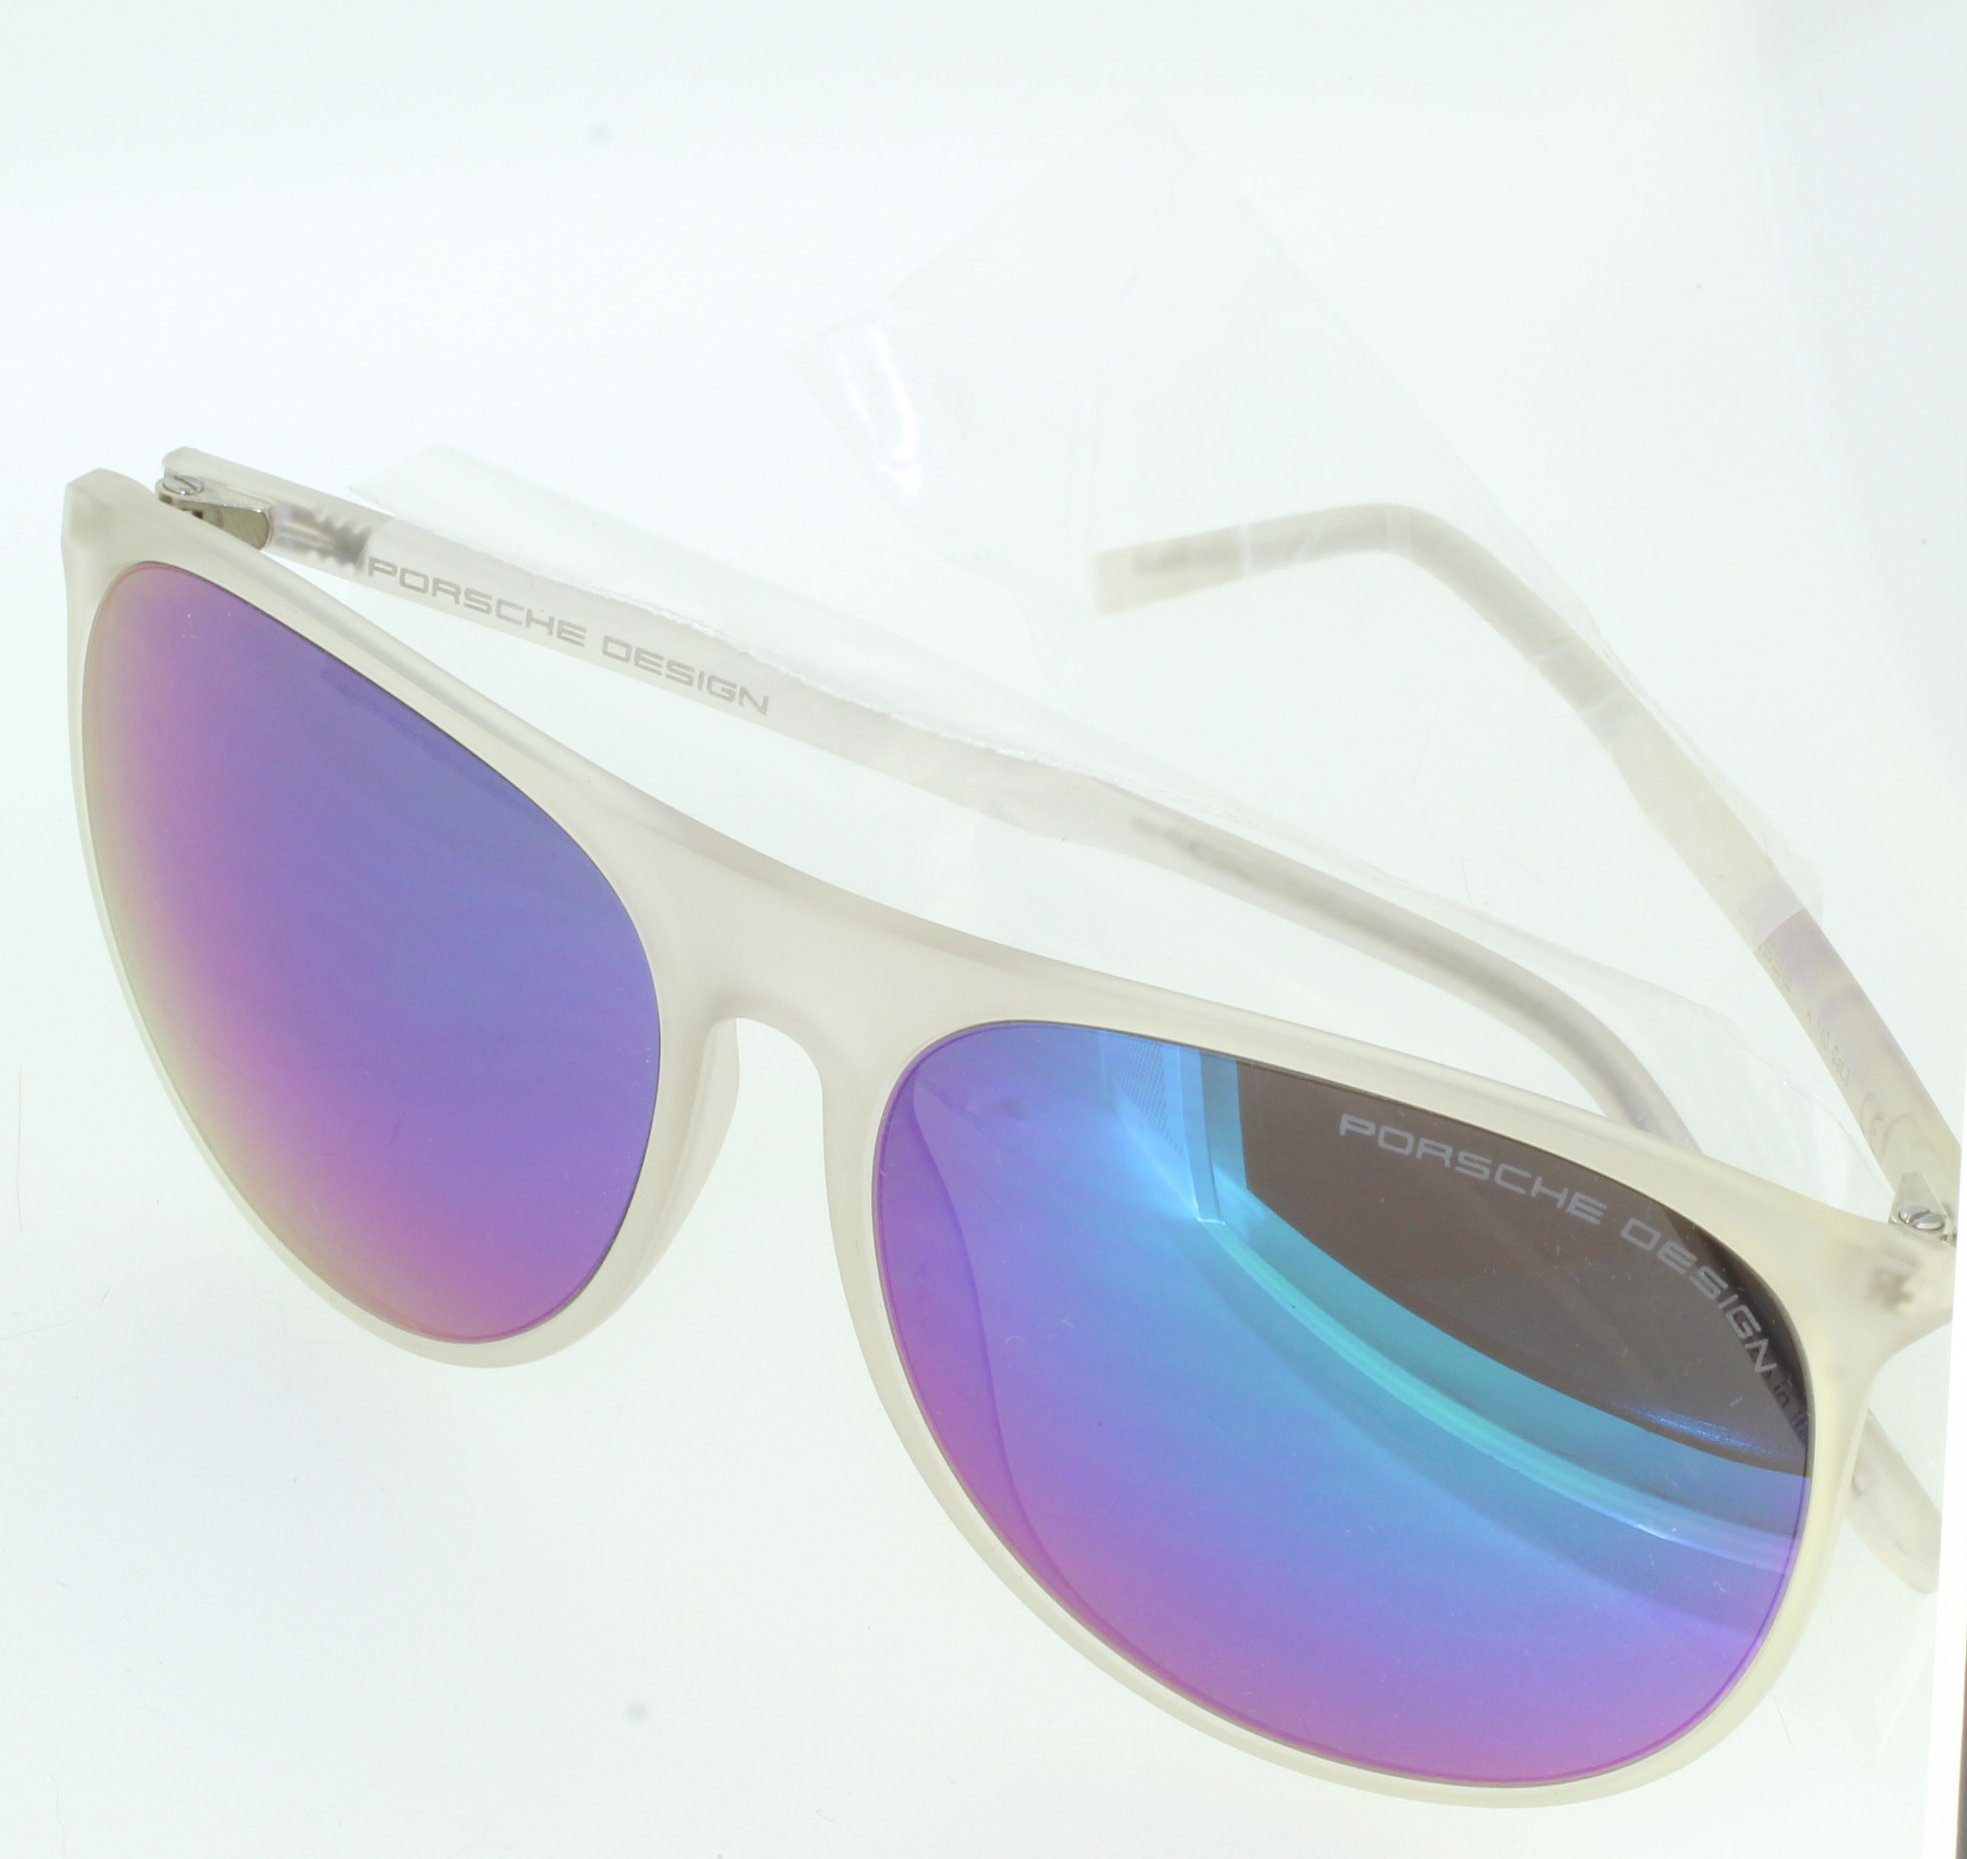 PORSCHE Design Sonnenbrille Sunglasses A P8596 blau 58 transparent